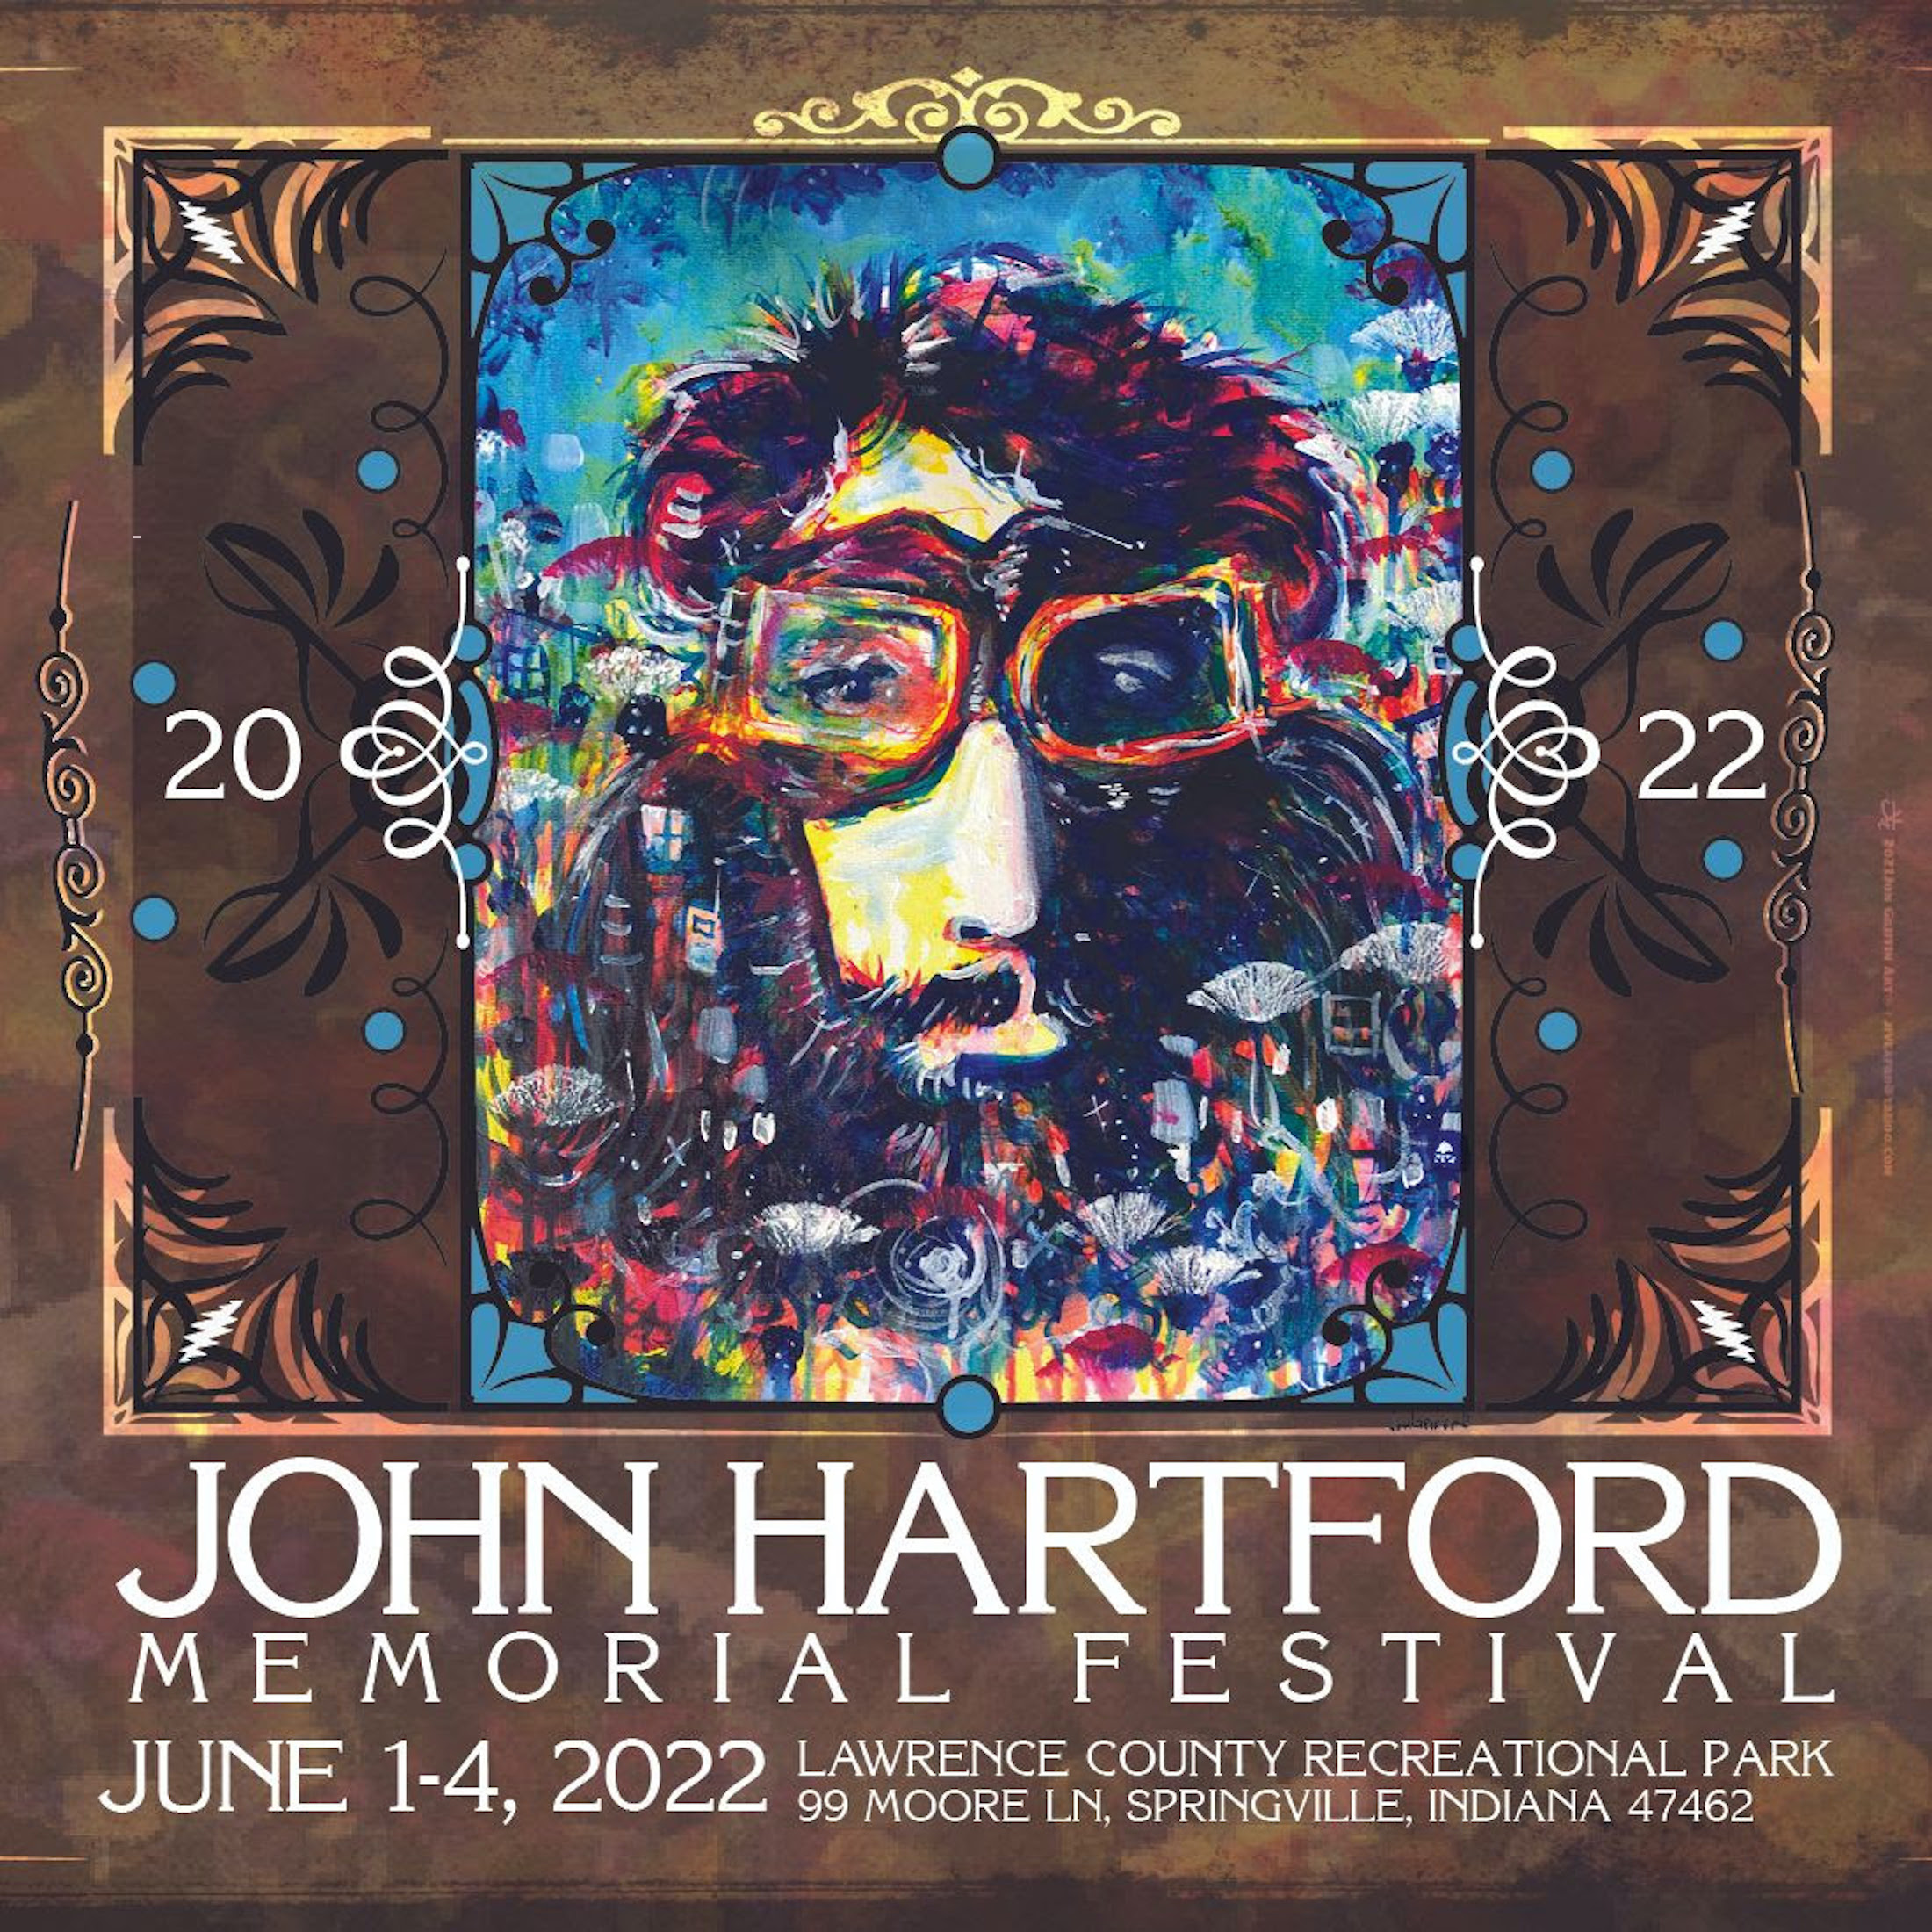 John Hartford Memorial Festival Is Back June 1st - 4th, 2022